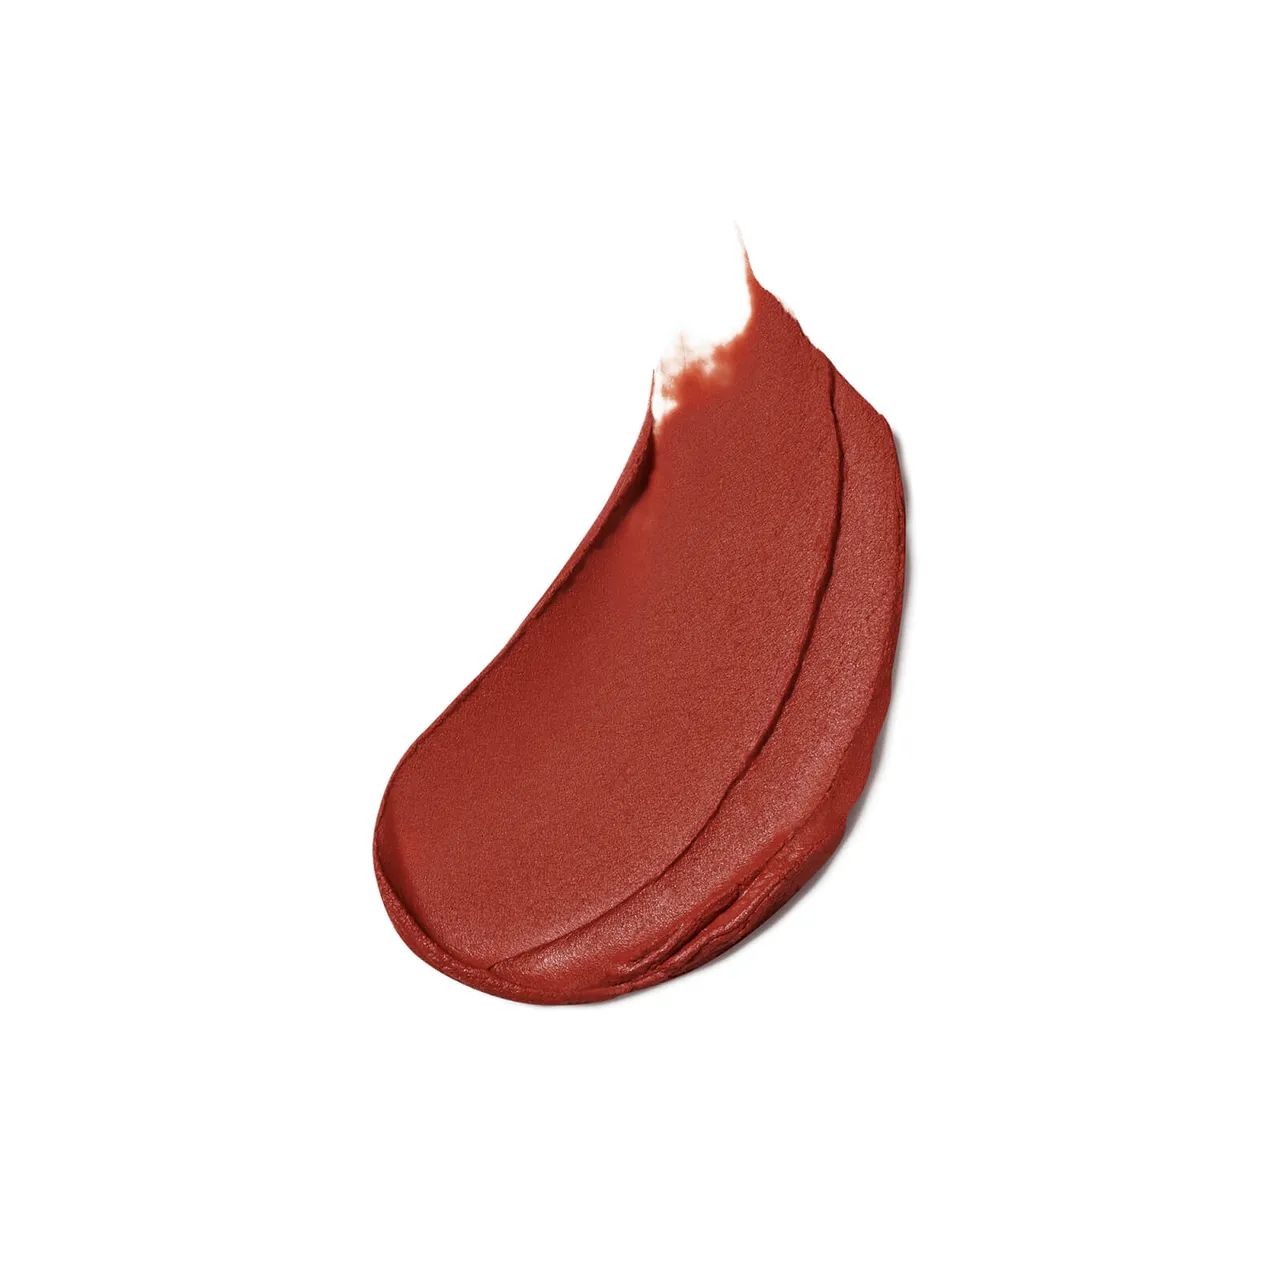 Estée Lauder Pure Colour Matte Lipstick 3.5g (Various Shades) - Persuasive Matte